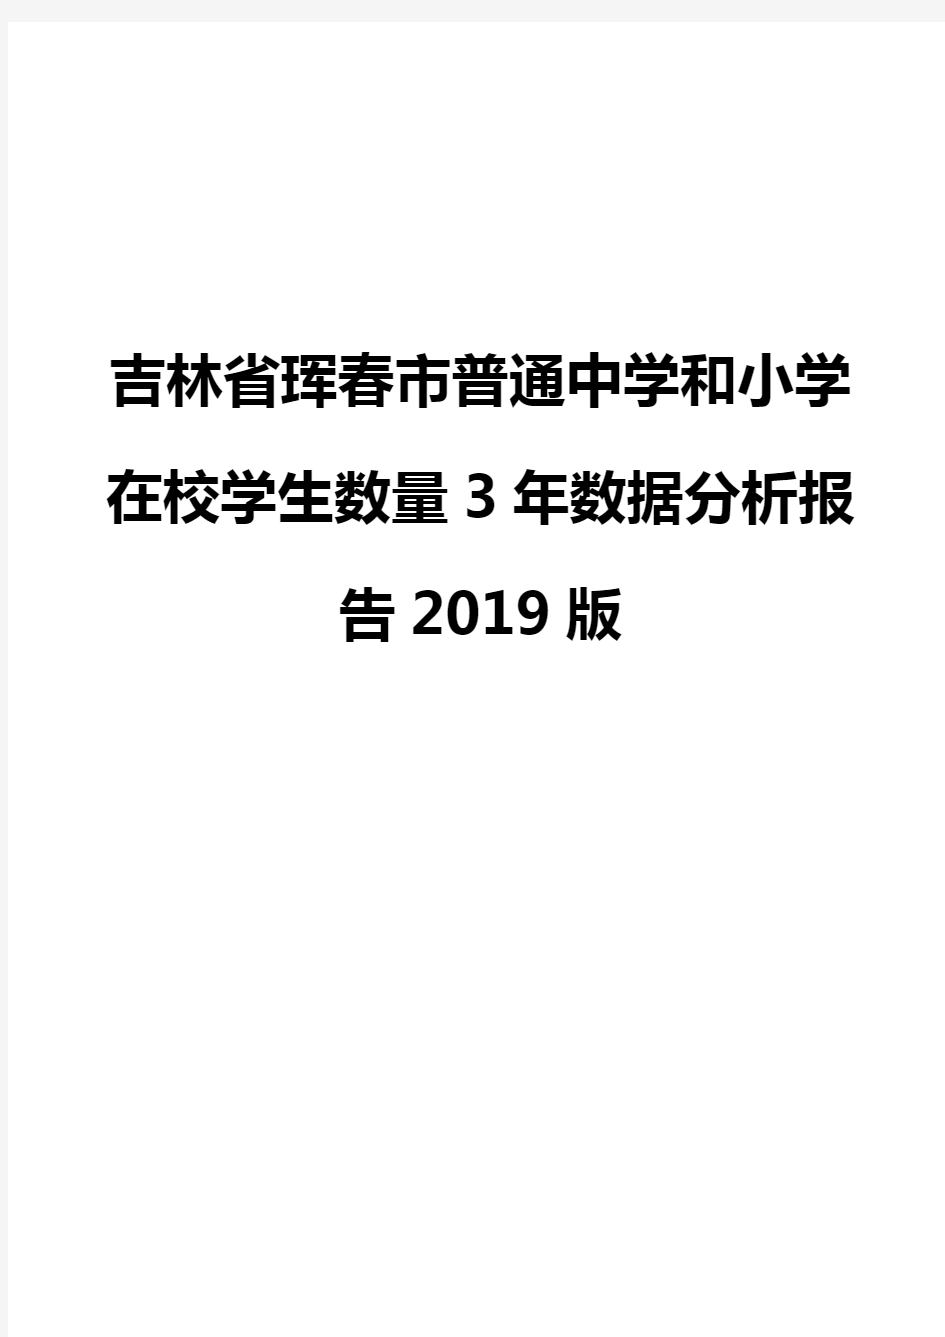 吉林省珲春市普通中学和小学在校学生数量3年数据分析报告2019版